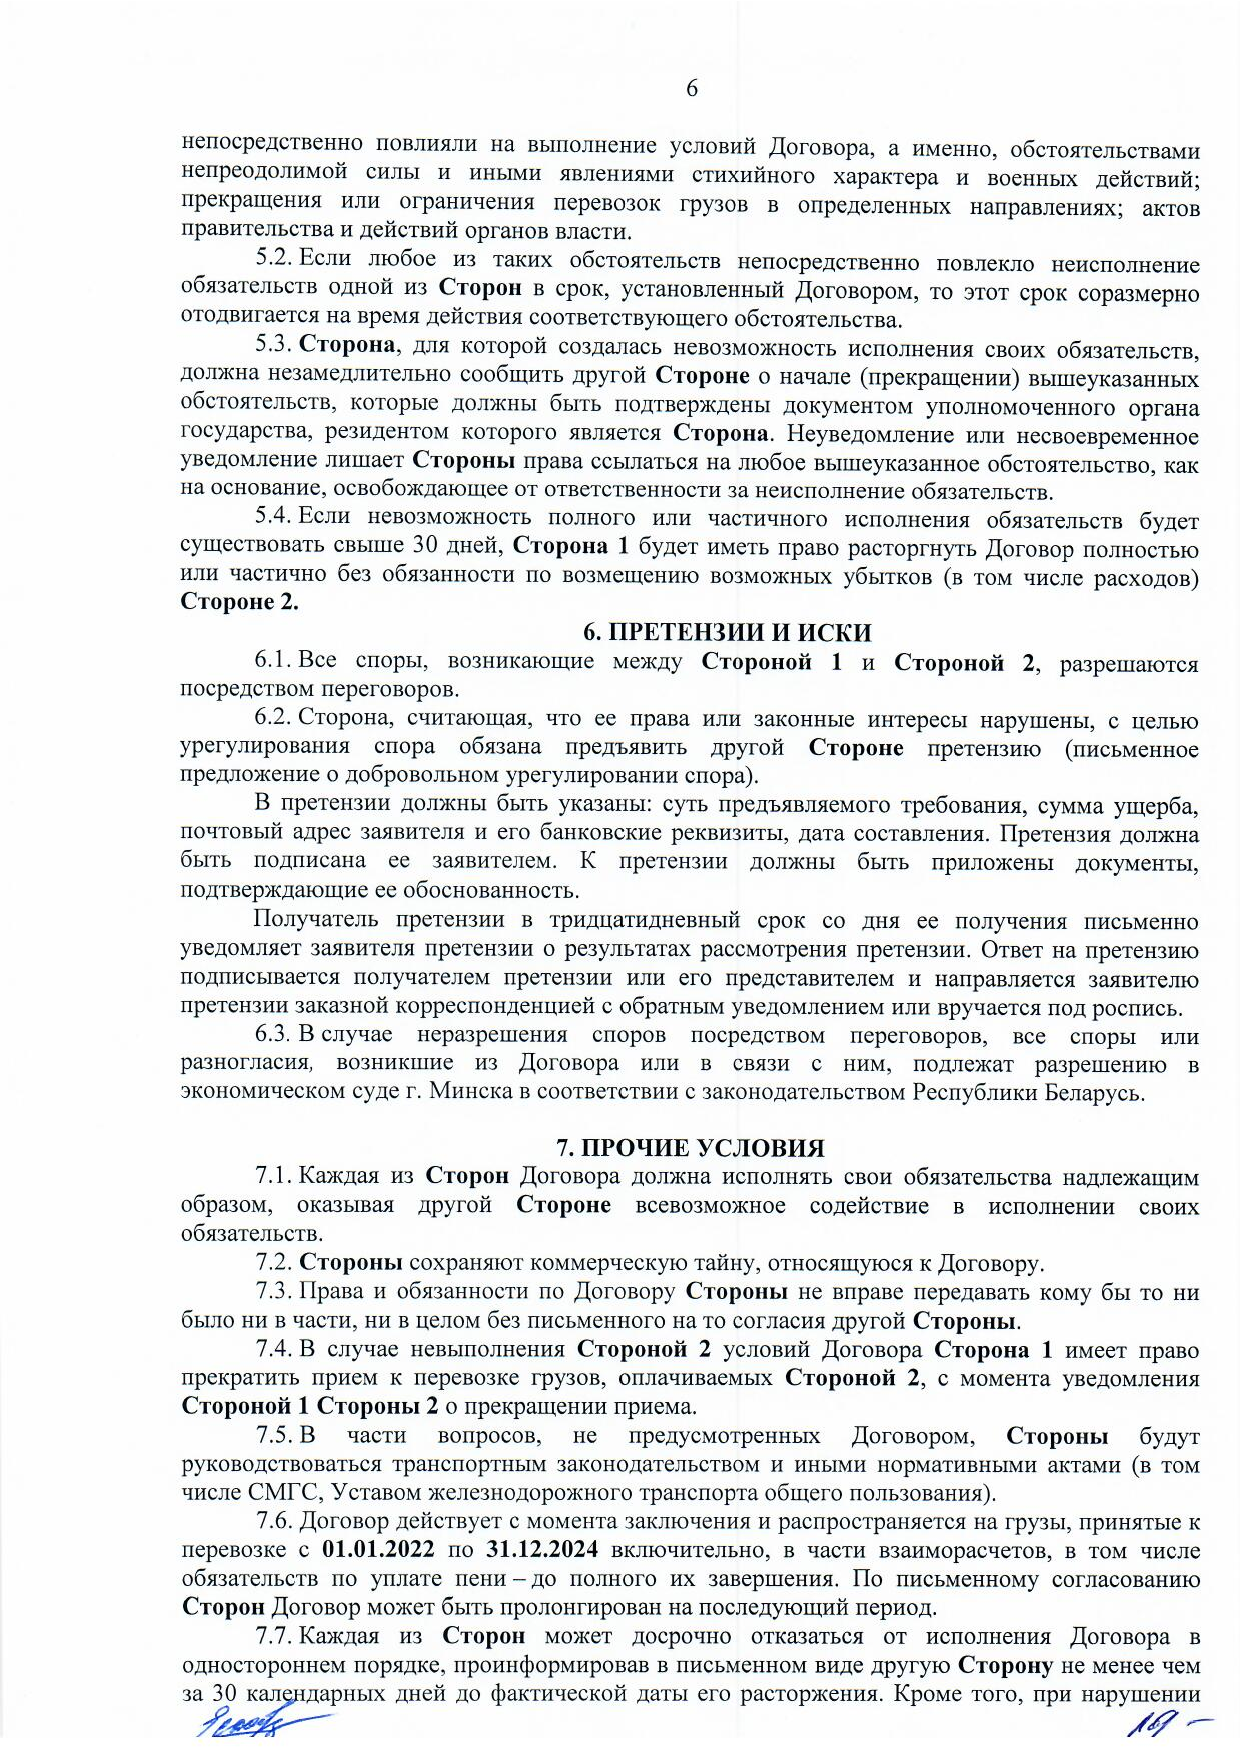 Договор между БЖД и ООО «Логистик Энерджи» от 29.11.2021 № ИРЦ/Ю-710 (Страница 6)